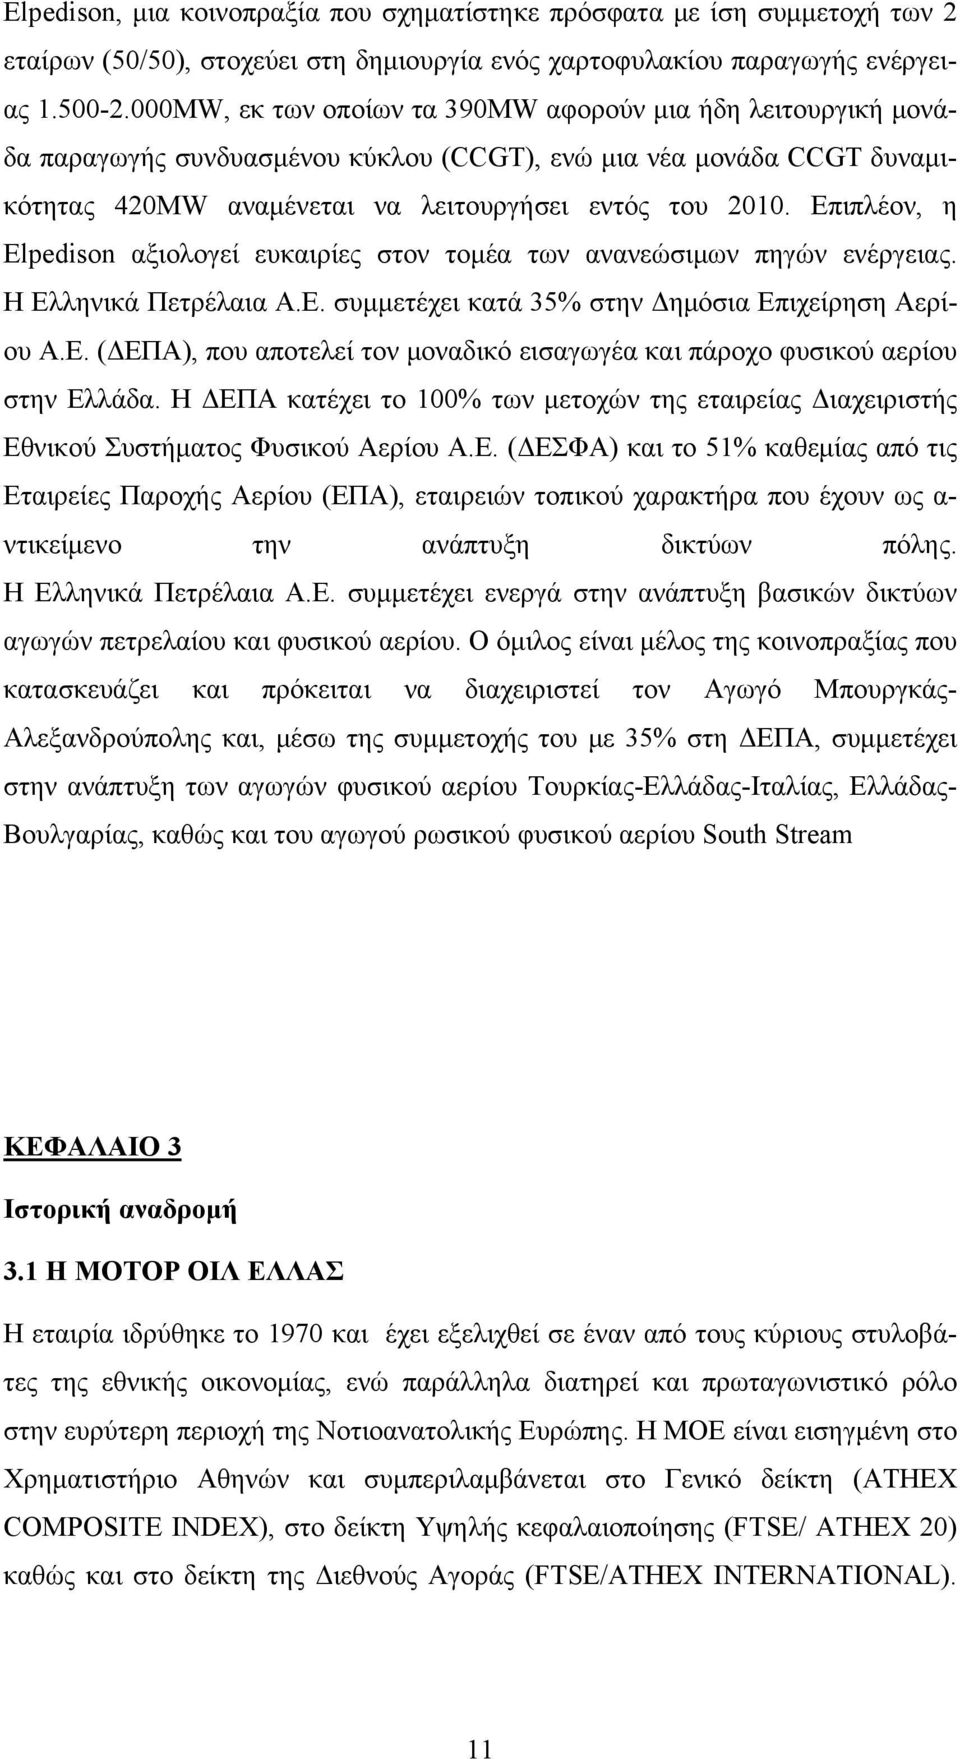 Επιπλέον, η Elpedison αξιολογεί ευκαιρίες στον τομέα των ανανεώσιμων πηγών ενέργειας. Η Ελληνικά Πετρέλαια Α.Ε. συμμετέχει κατά 35% στην Δημόσια Επιχείρηση Αερίου Α.Ε. (ΔΕΠΑ), που αποτελεί τον μοναδικό εισαγωγέα και πάροχο φυσικού αερίου στην Ελλάδα.